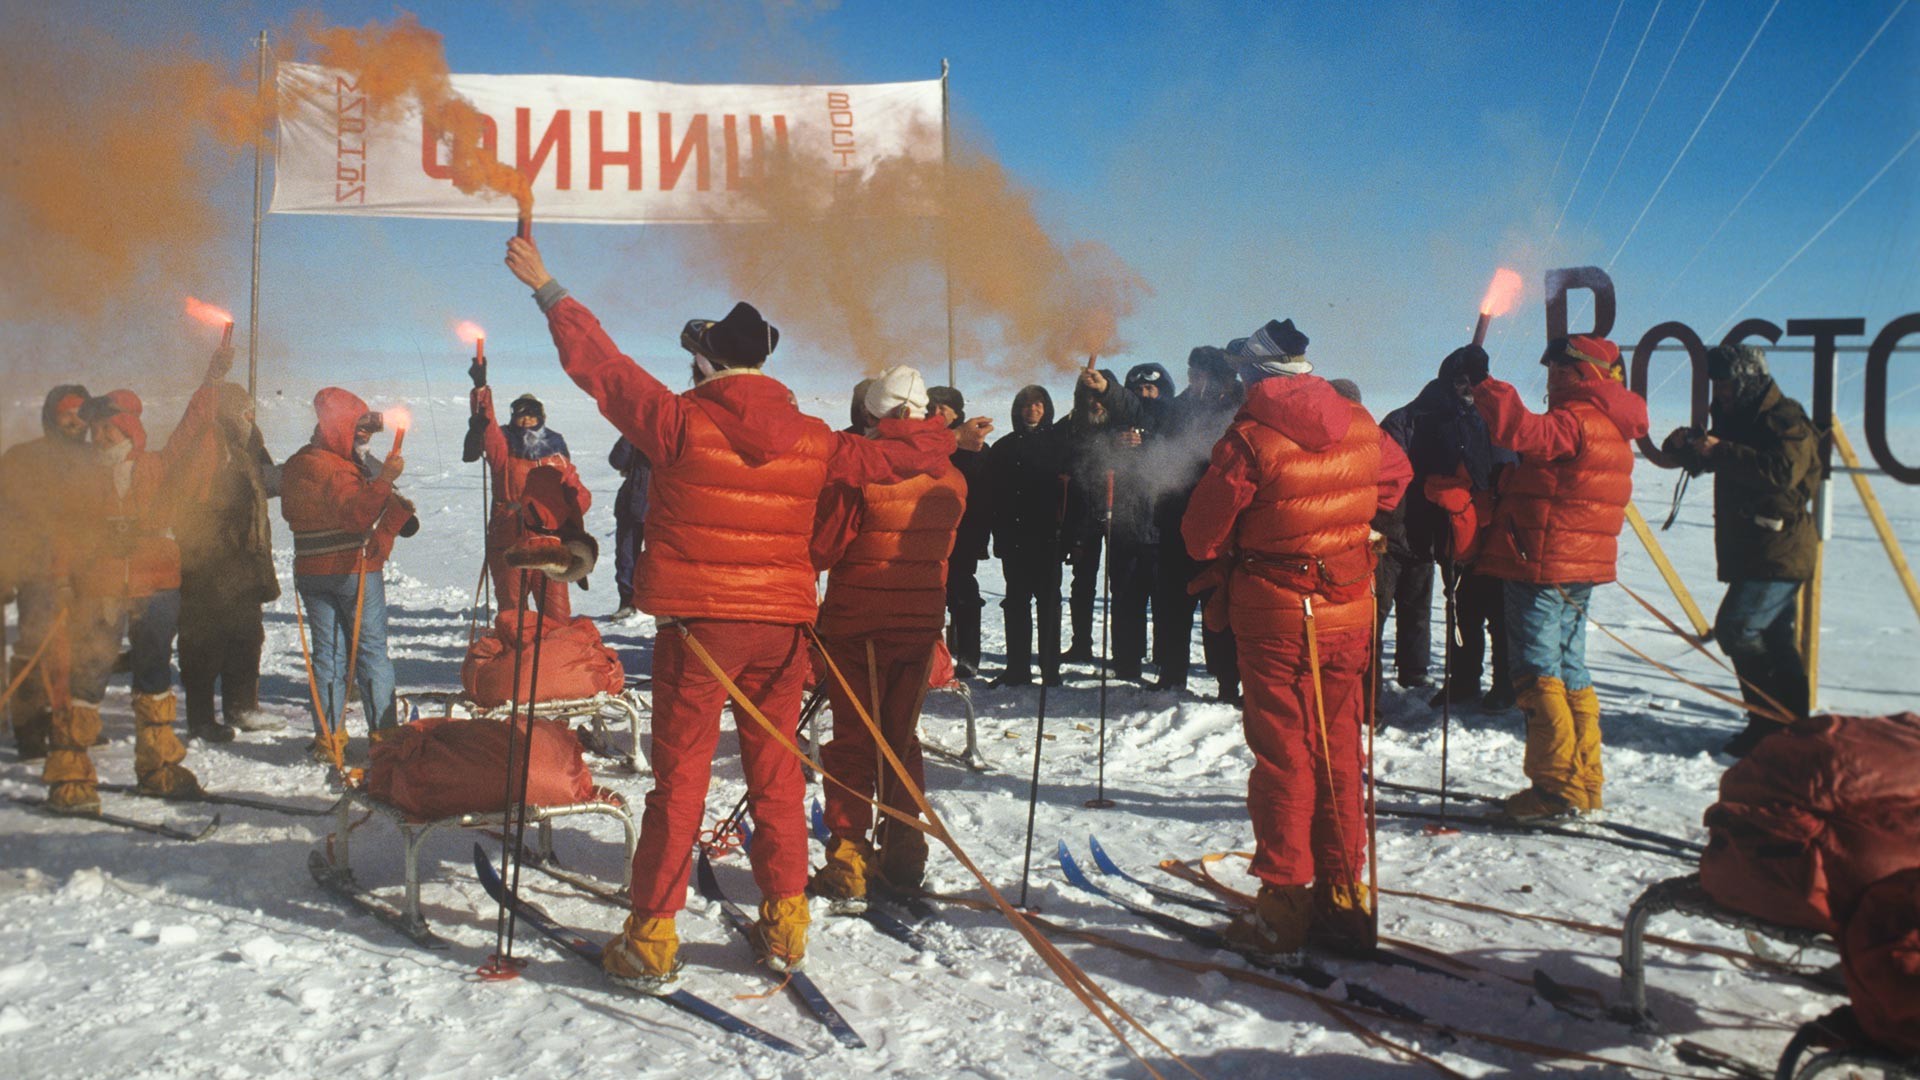 Pendant les 12 derniers kilomètres, les femmes ont marché vêtues d'uniformes rouges, pour célébrer la dernière réalisation des femmes soviétiques que l'on pensait auparavant impossible 